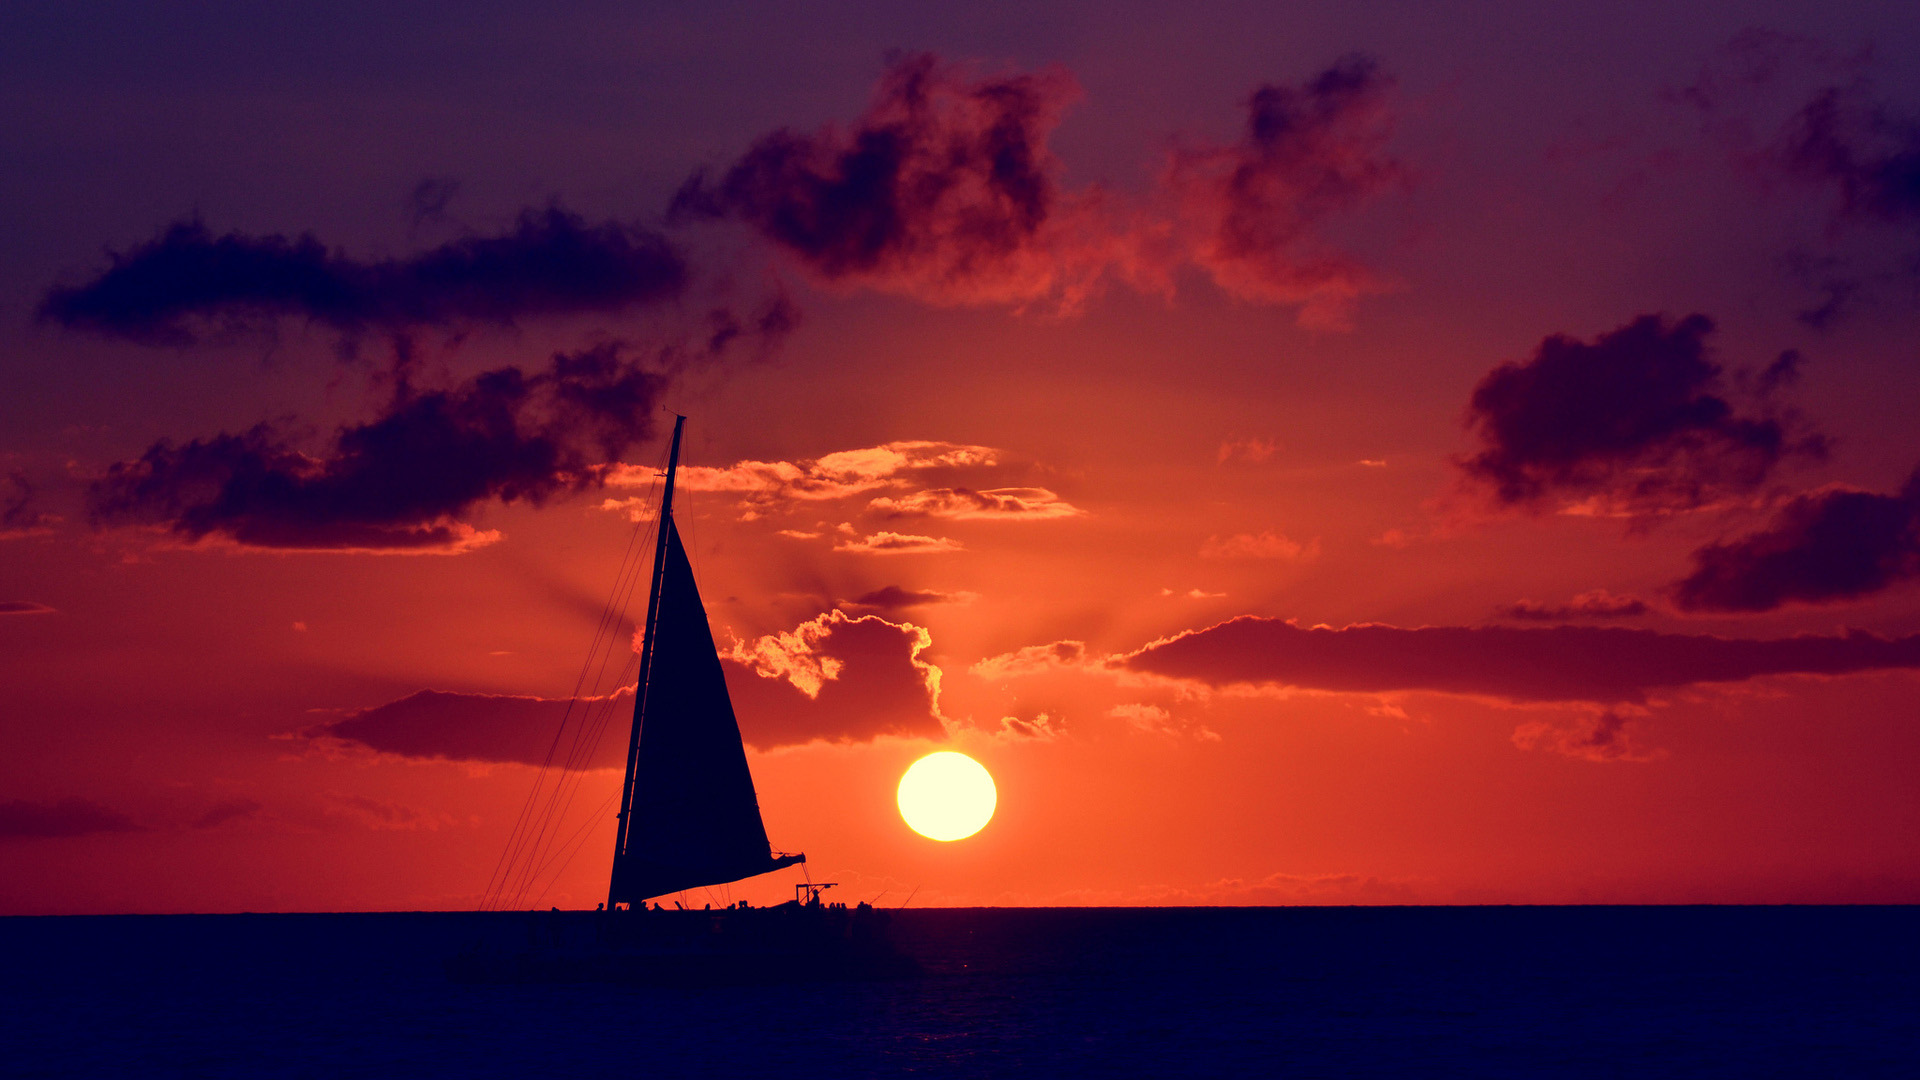 夕阳大海帆船风景桌面壁纸